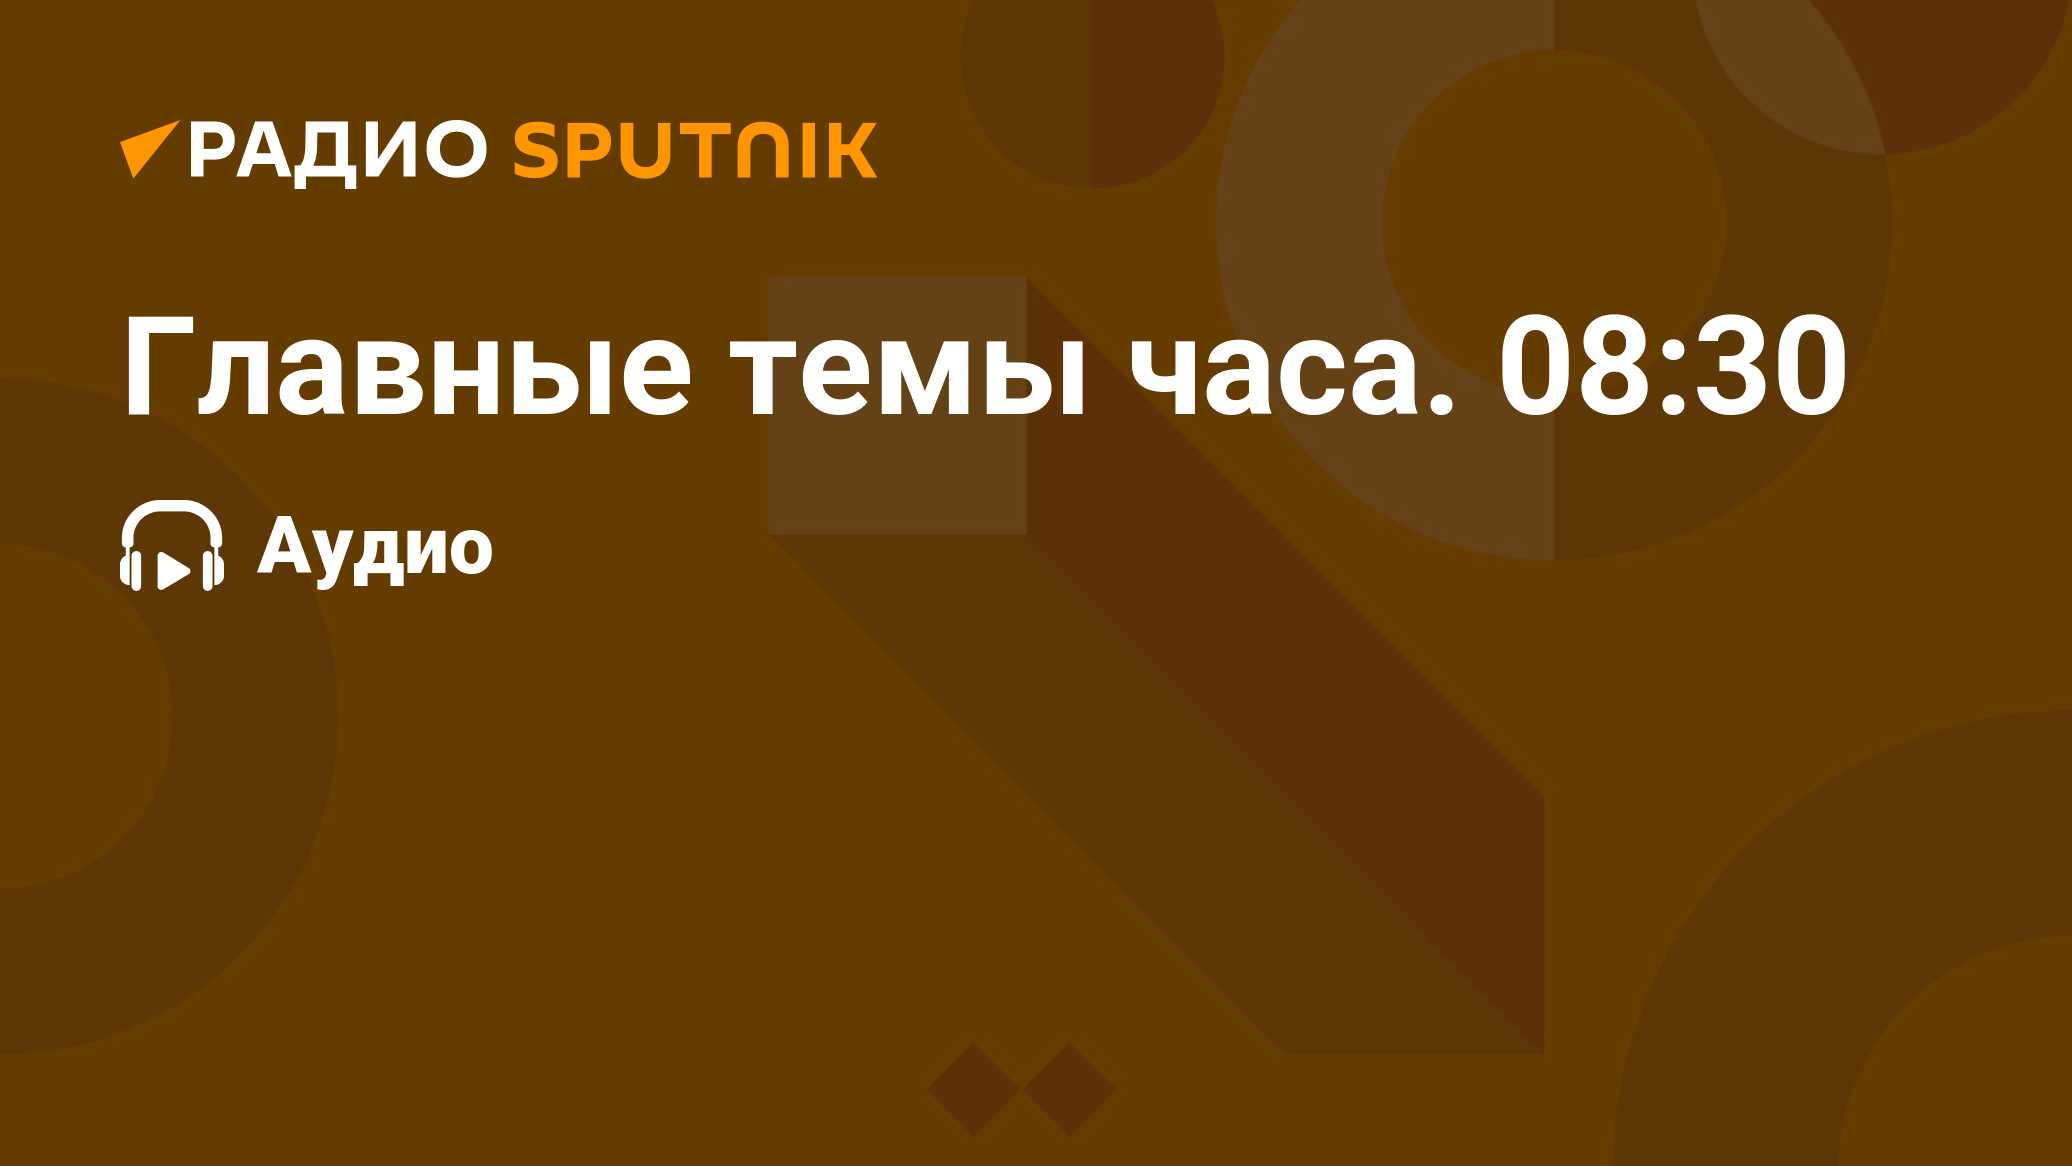 Главные Темы Часа. 08:30 - Радио Sputnik, 12.02.2022